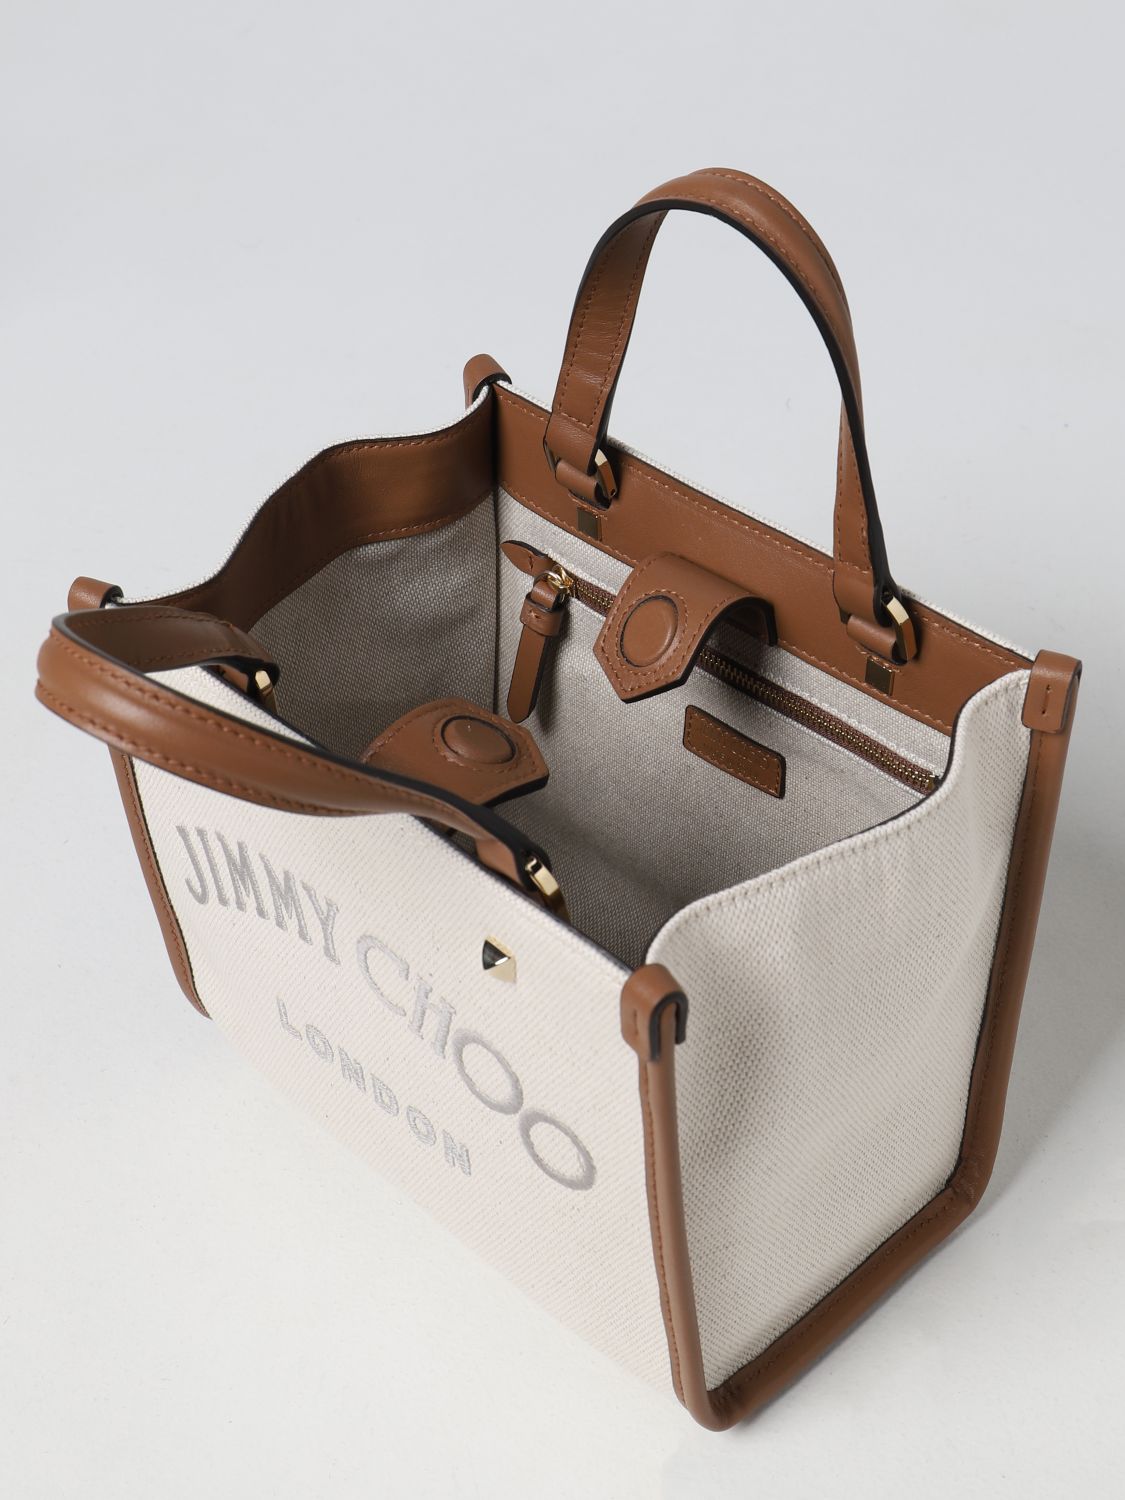 ブランド通販 Jimmy bag tote mini Choo ハンドバッグ